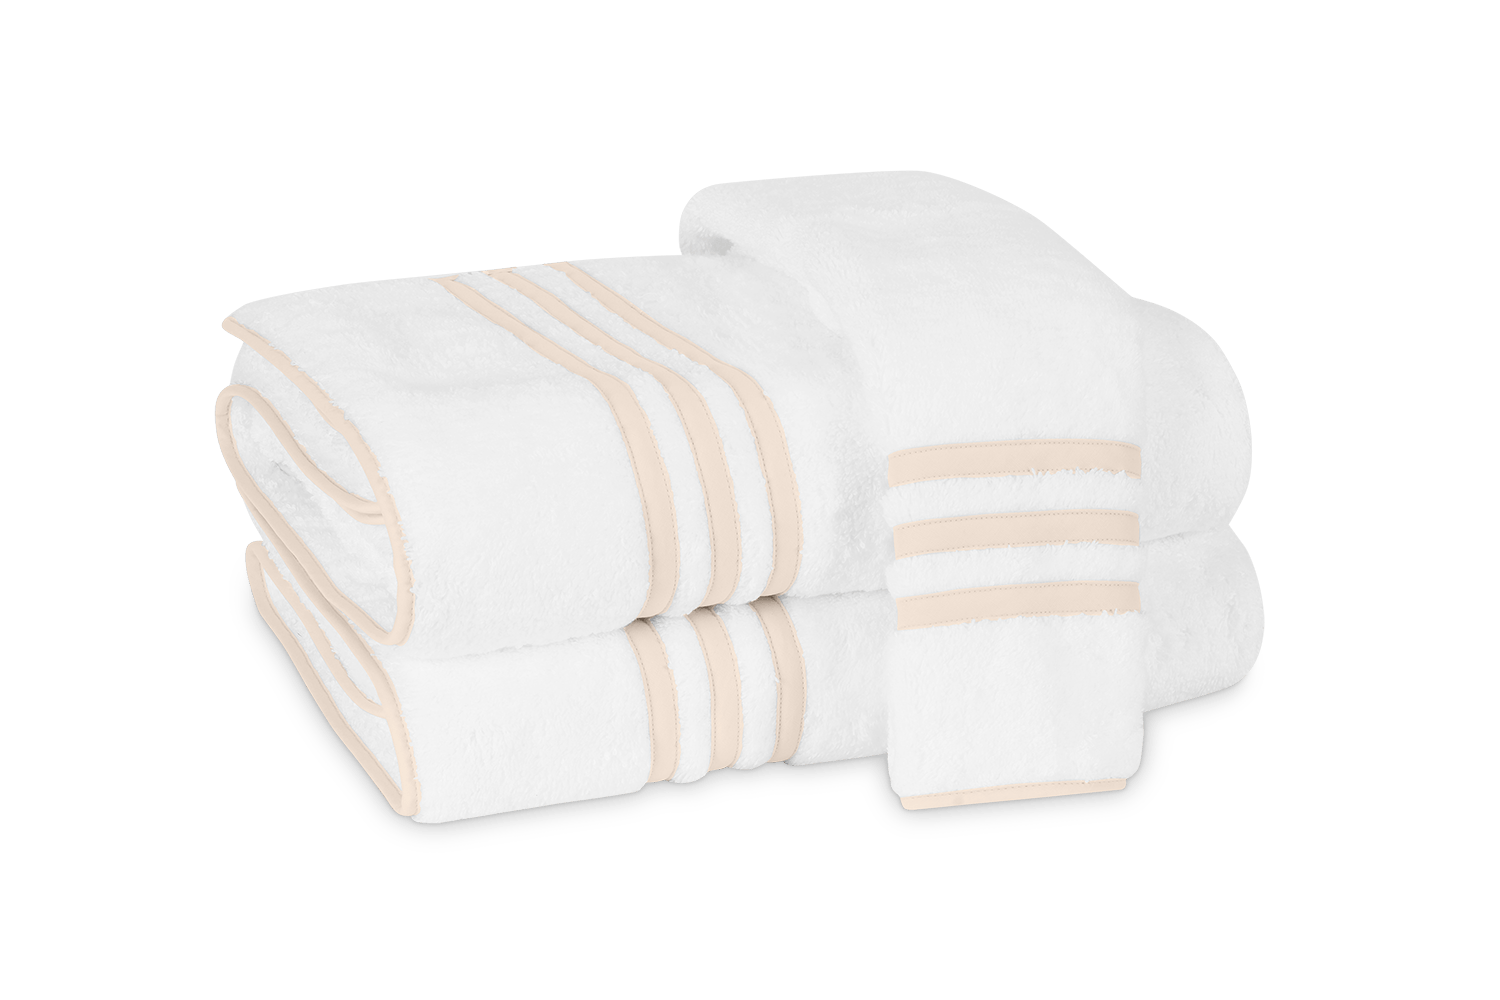 Biltmore Towels